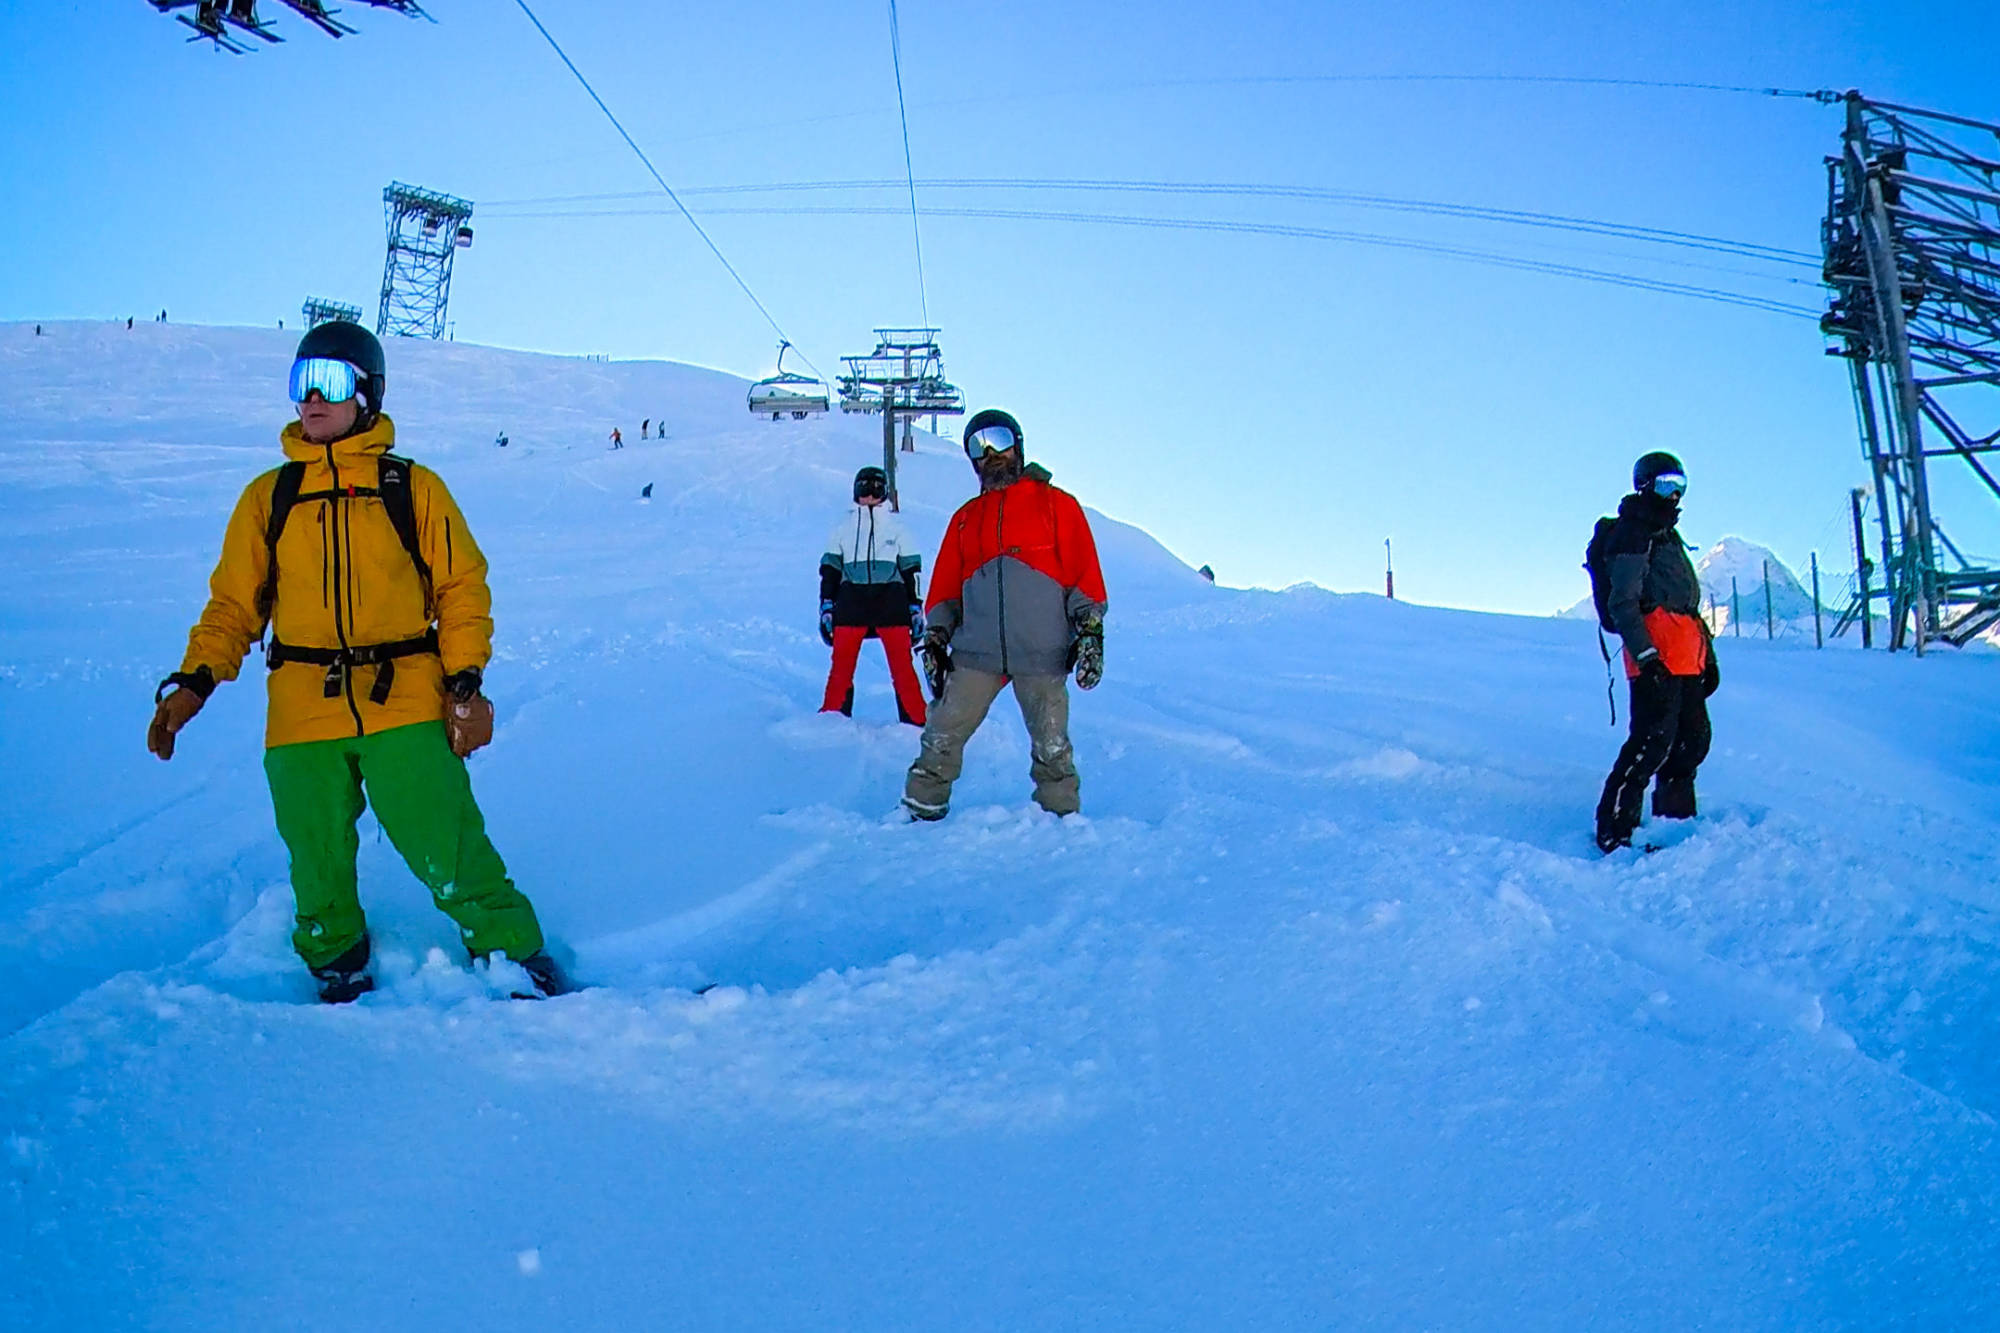 Snowboarding in Les Deux Alpes